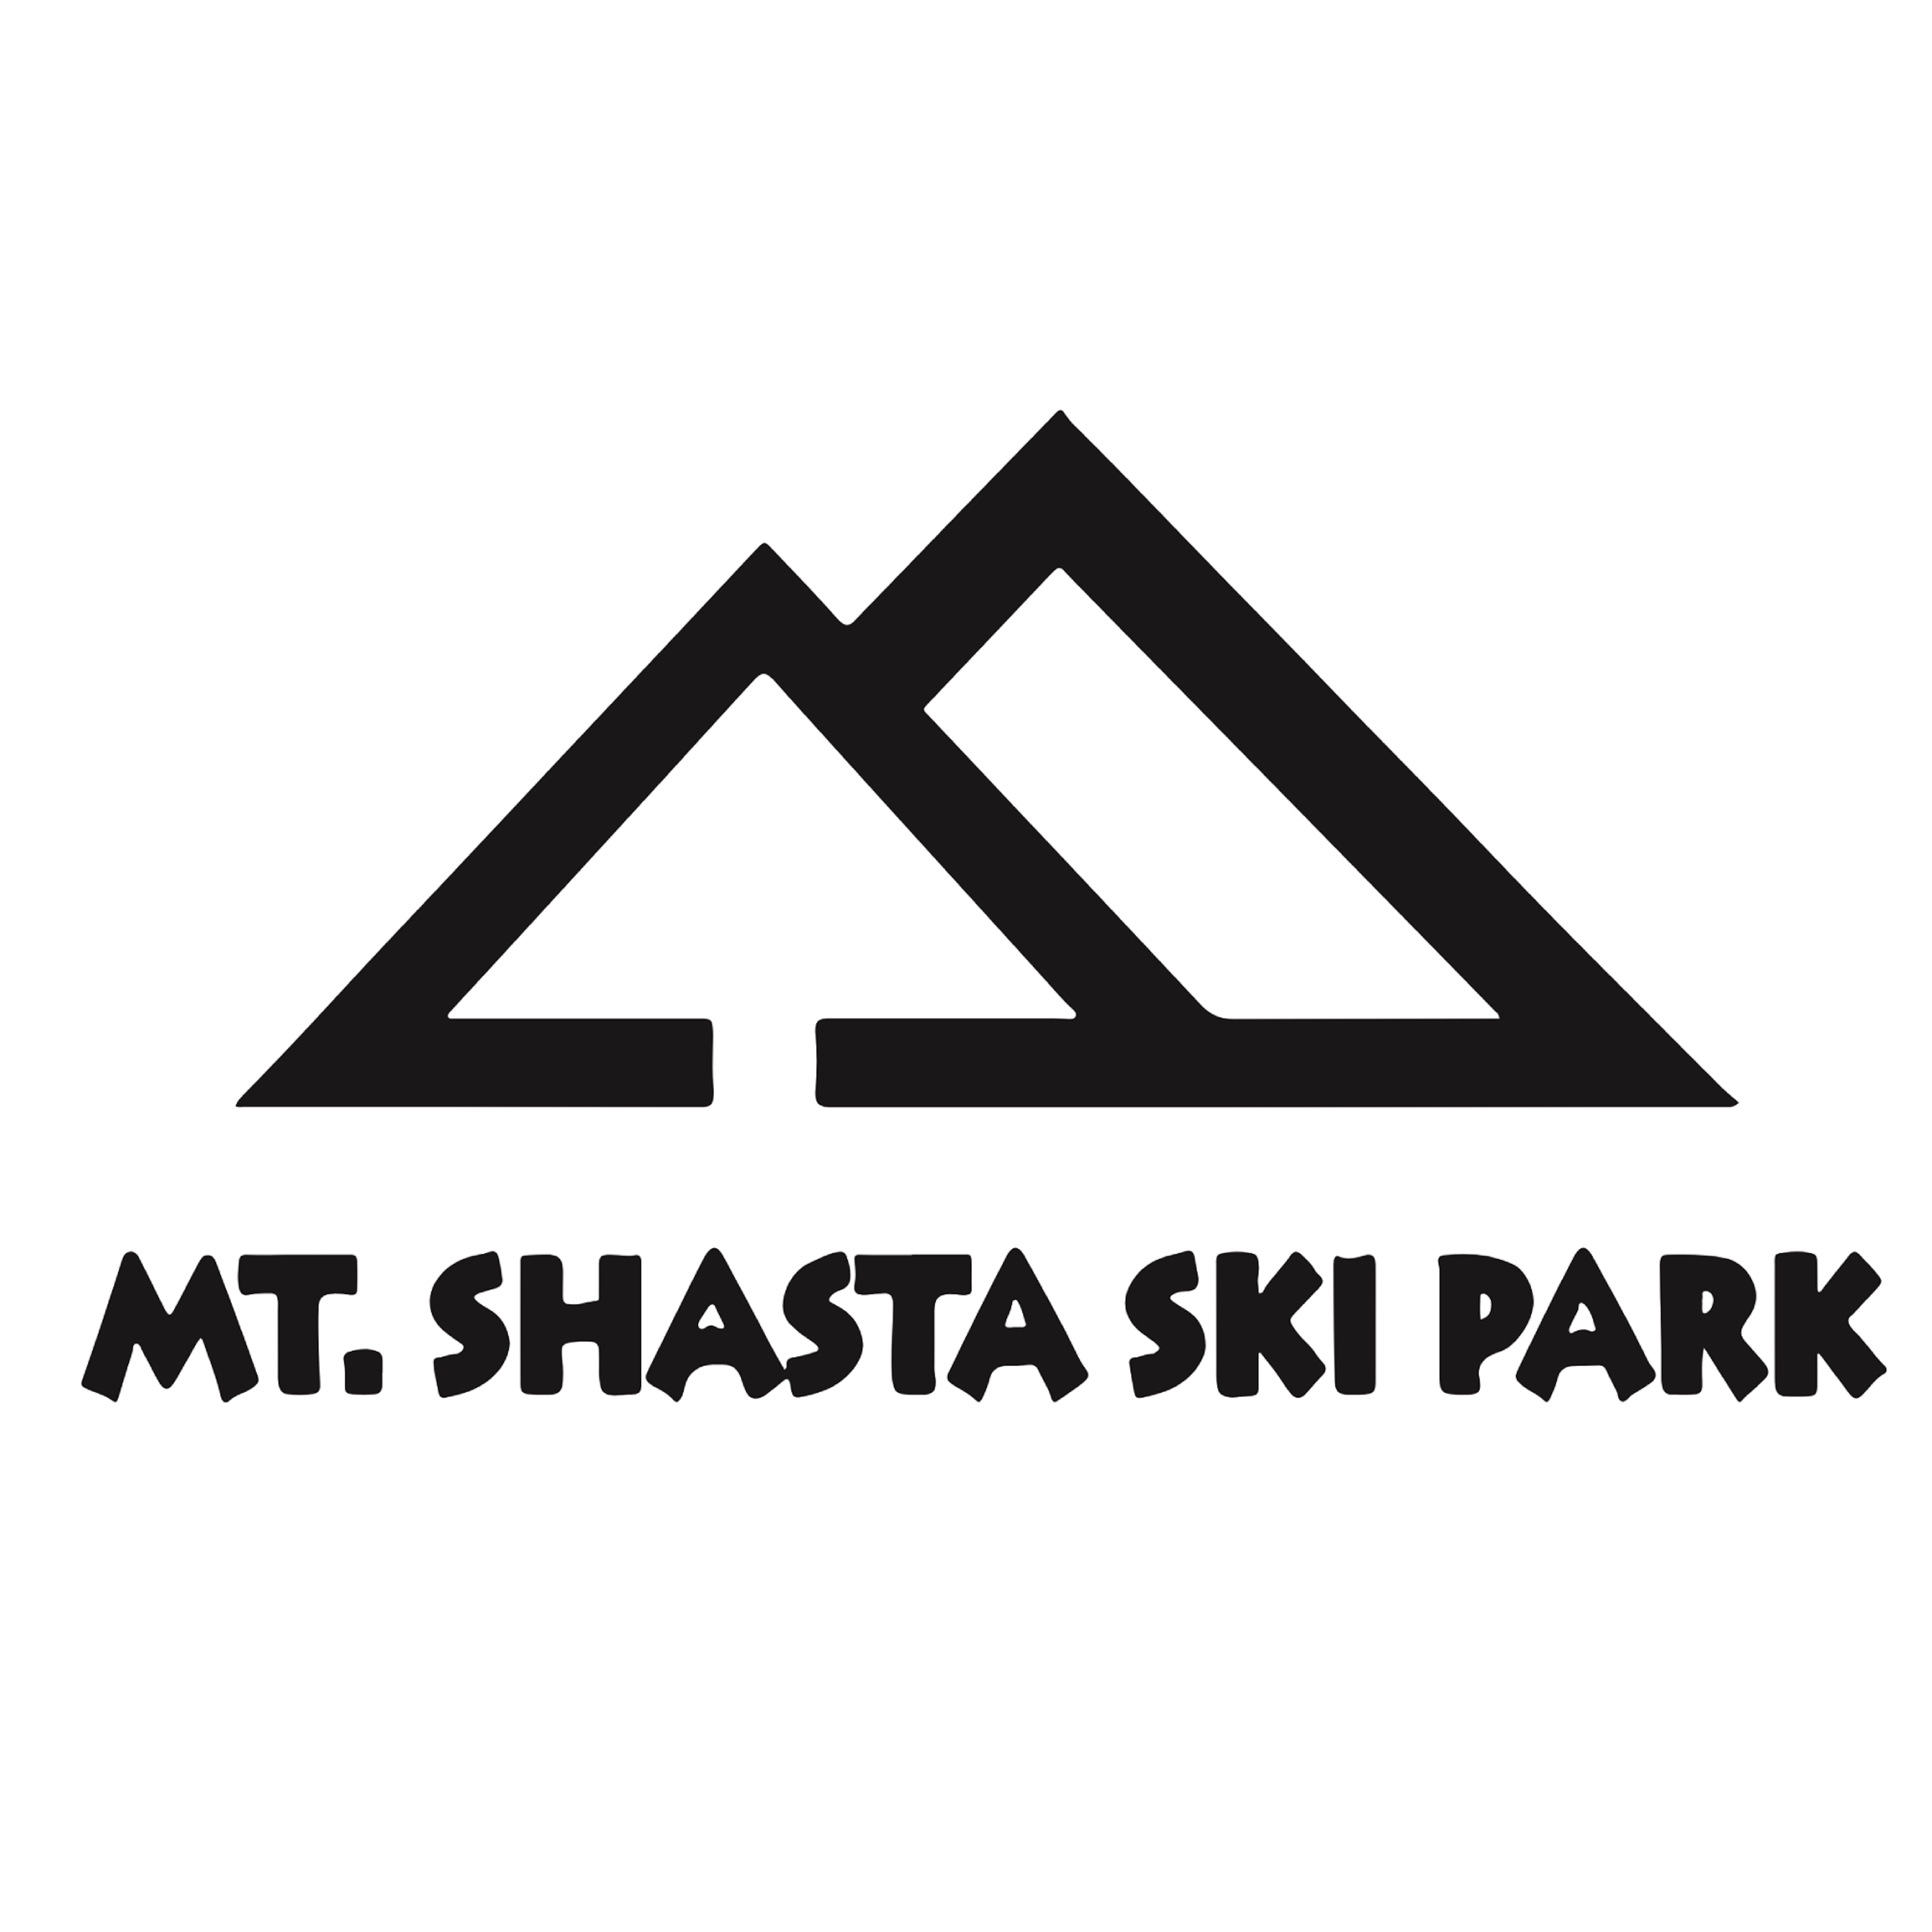 Mt. Shasta Ski Park logo